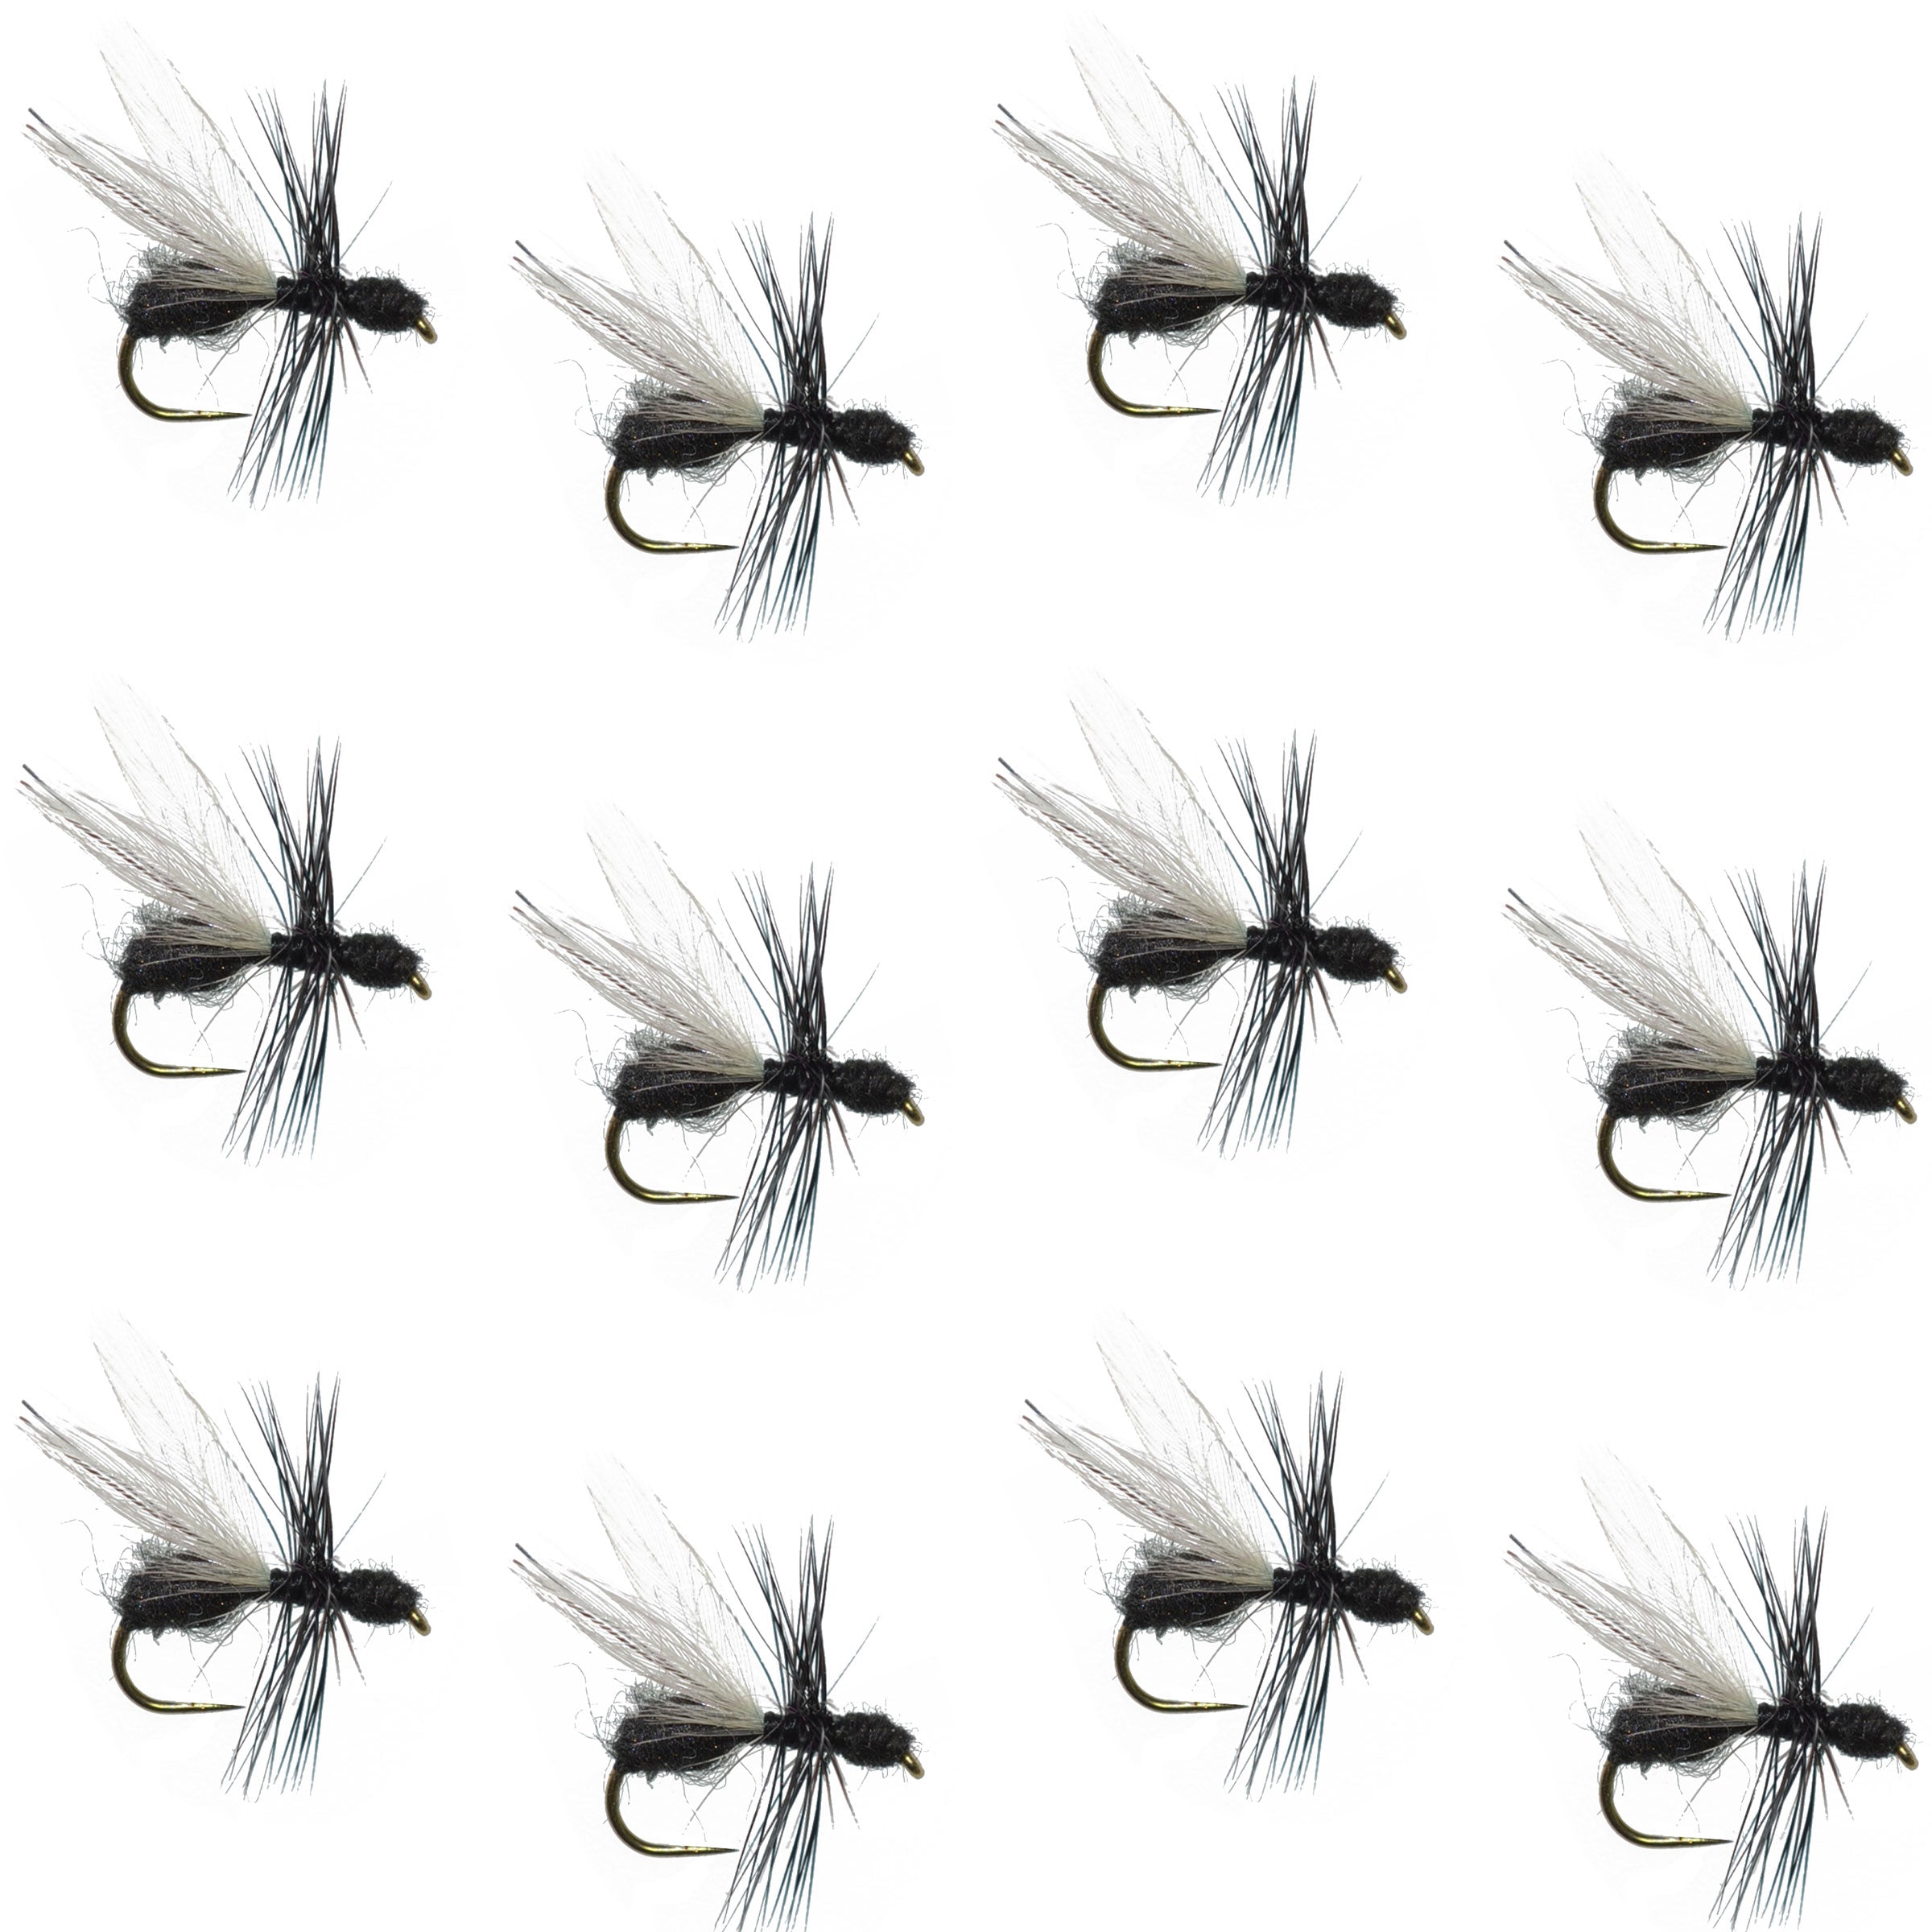 Moscas de pesca con mosca seca para trucha terrestre, hormiga voladora de piel negra sin púas, 1 docena de ganchos para moscas, tamaño 14